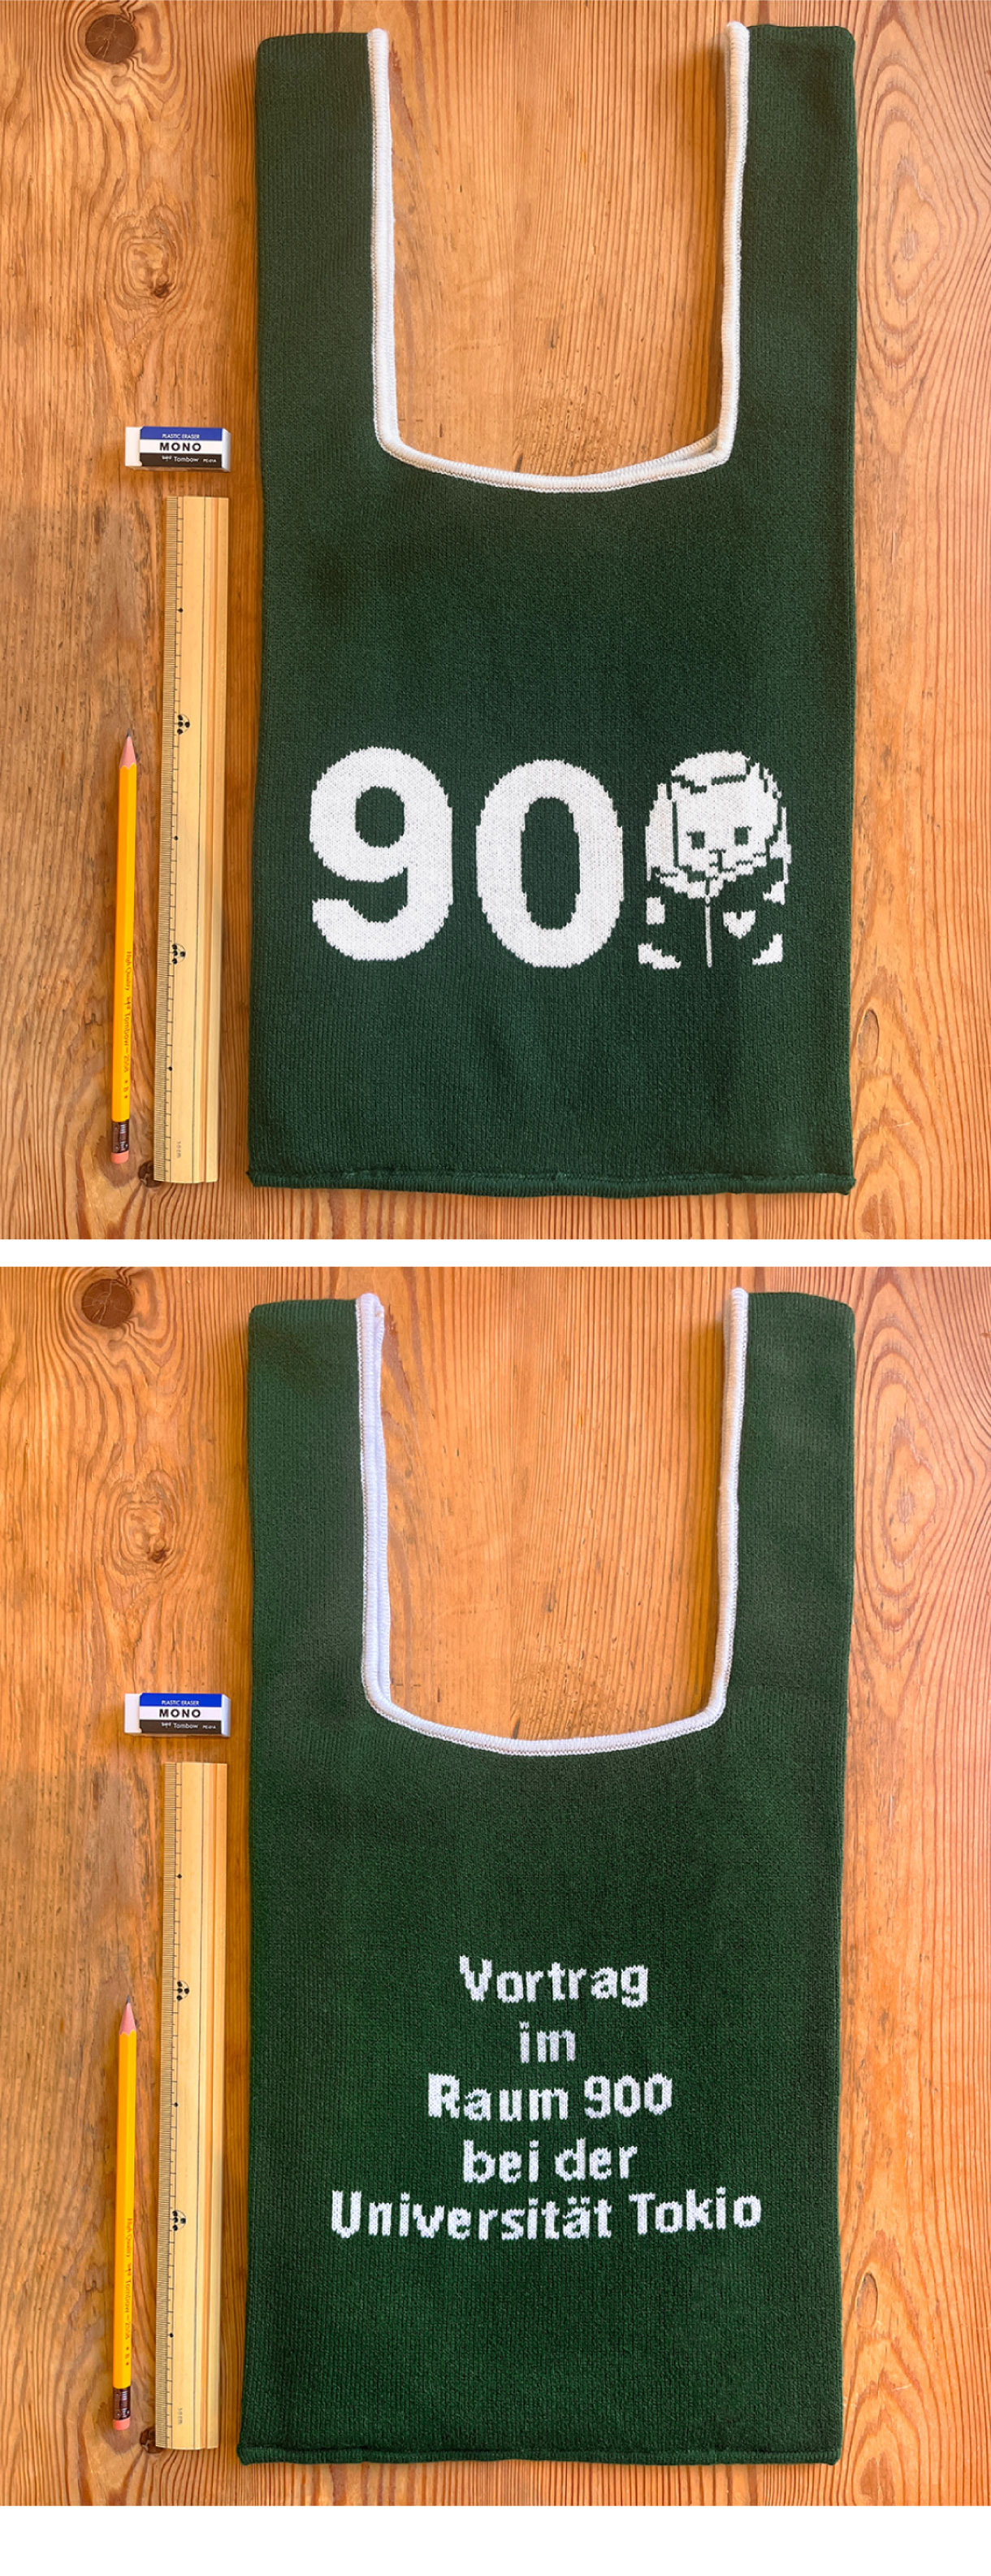 小沢健二 東大900番講堂講義 教科書（破れなし）+ ニットのジャガー編みバッグ